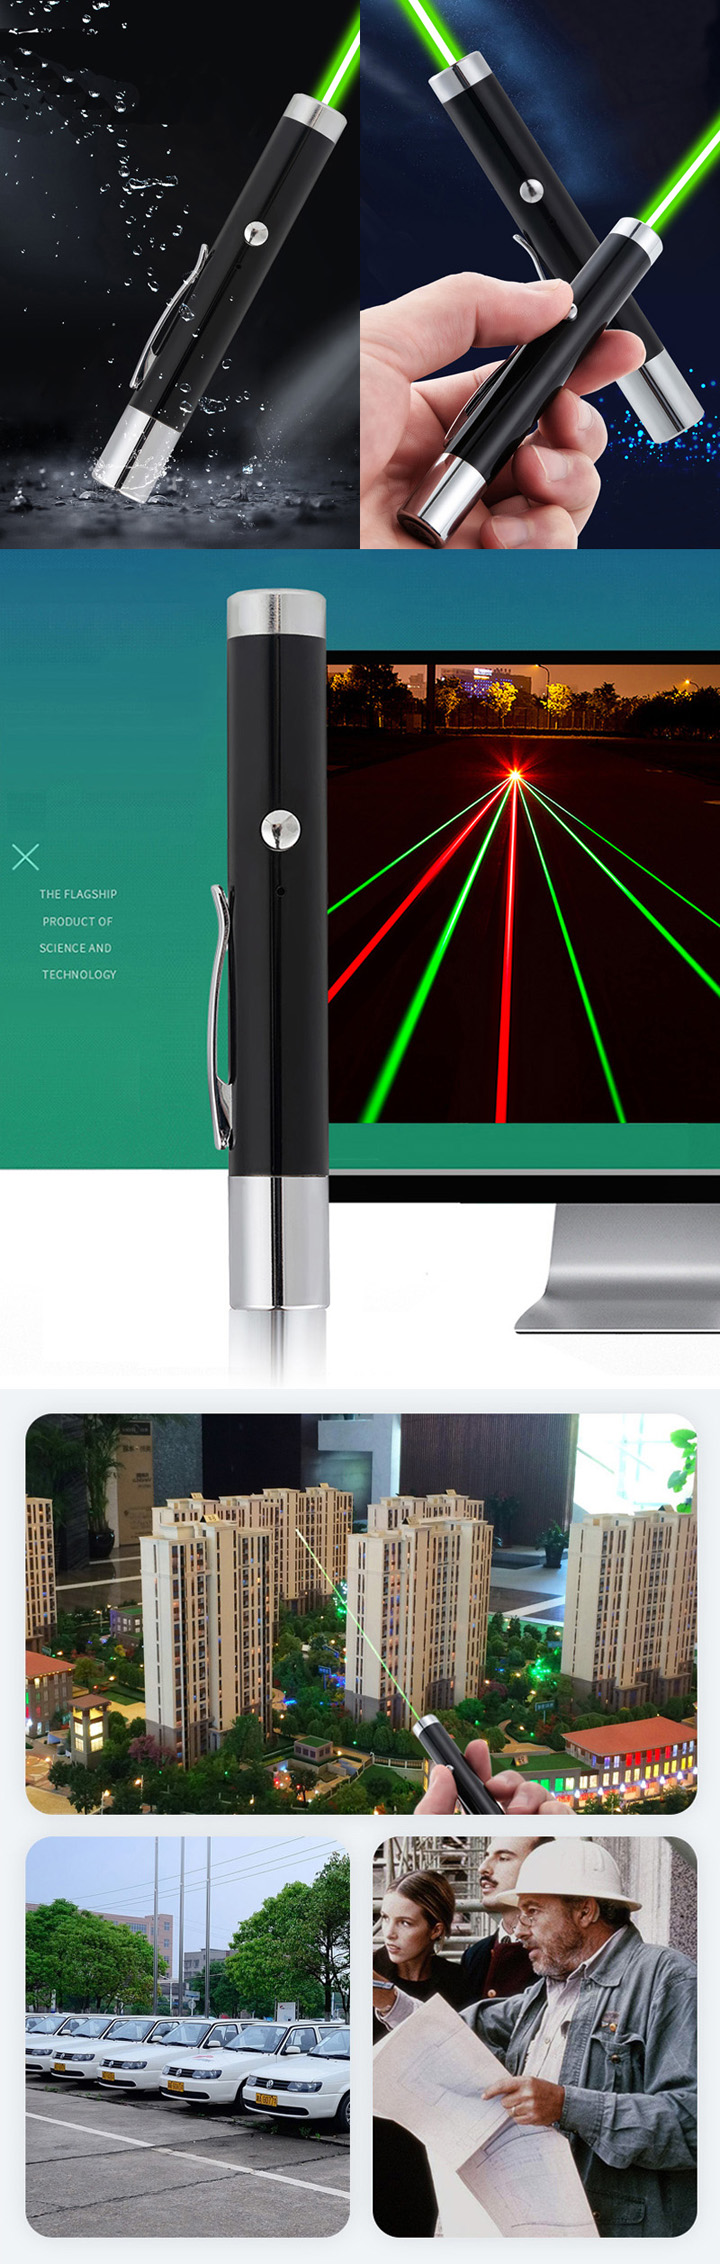 penna laser verde